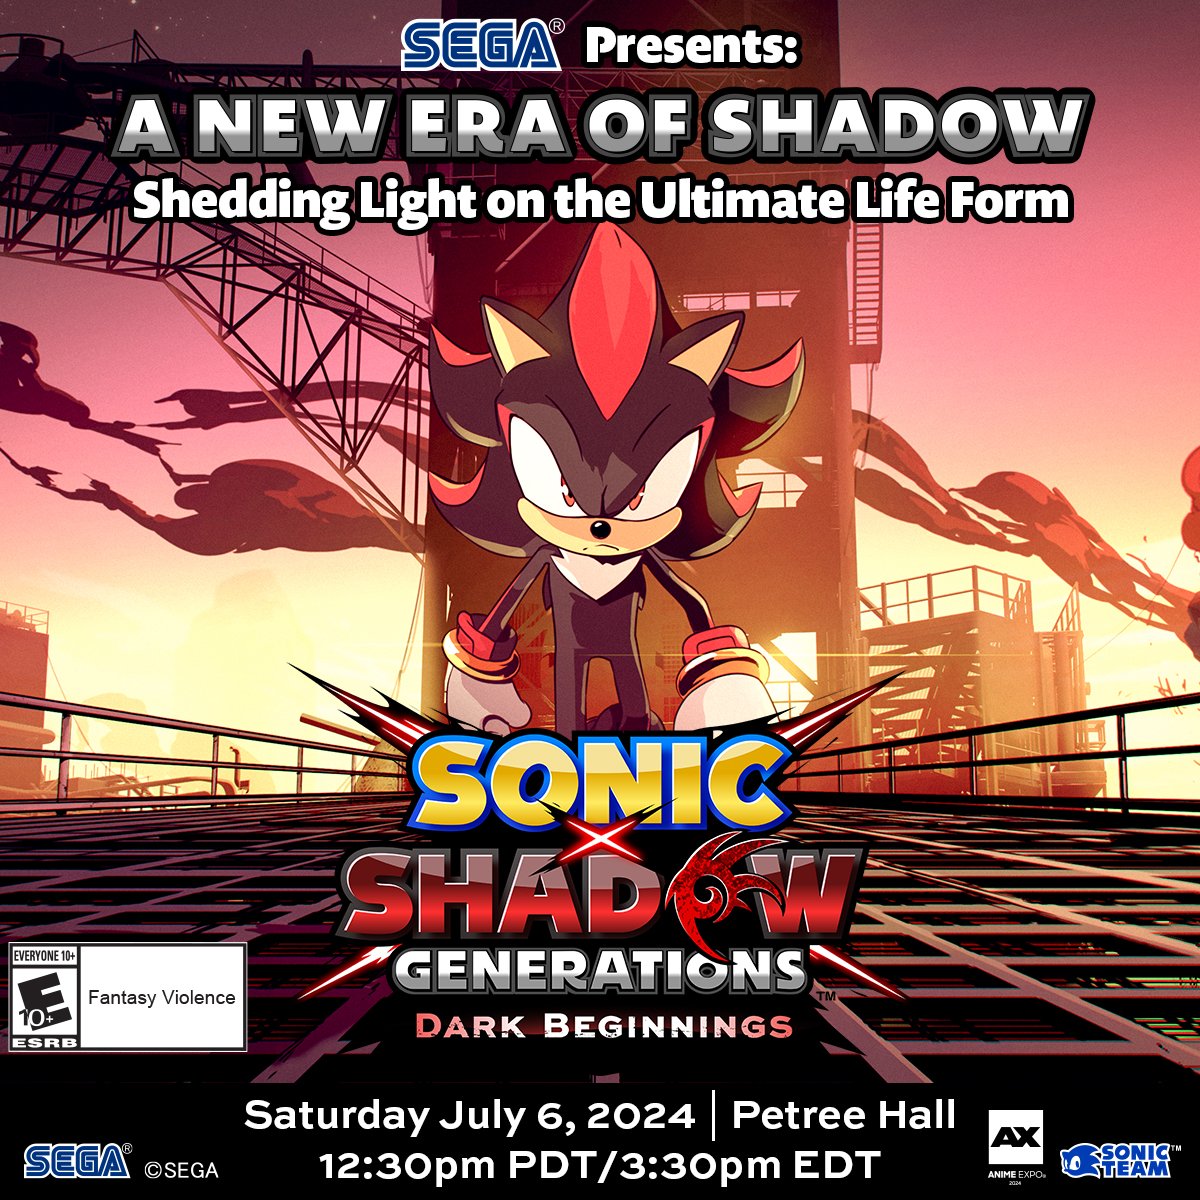 SEGA tendrá un panel en el evento Anime Expo del próximo julio titulado 'A NEW ERA OF SHADOW', dónde entre otras cosas responderán dudas sobre un nuevo corto animado: 'Sonic X Shadow Generations: Dark Beginnings'!